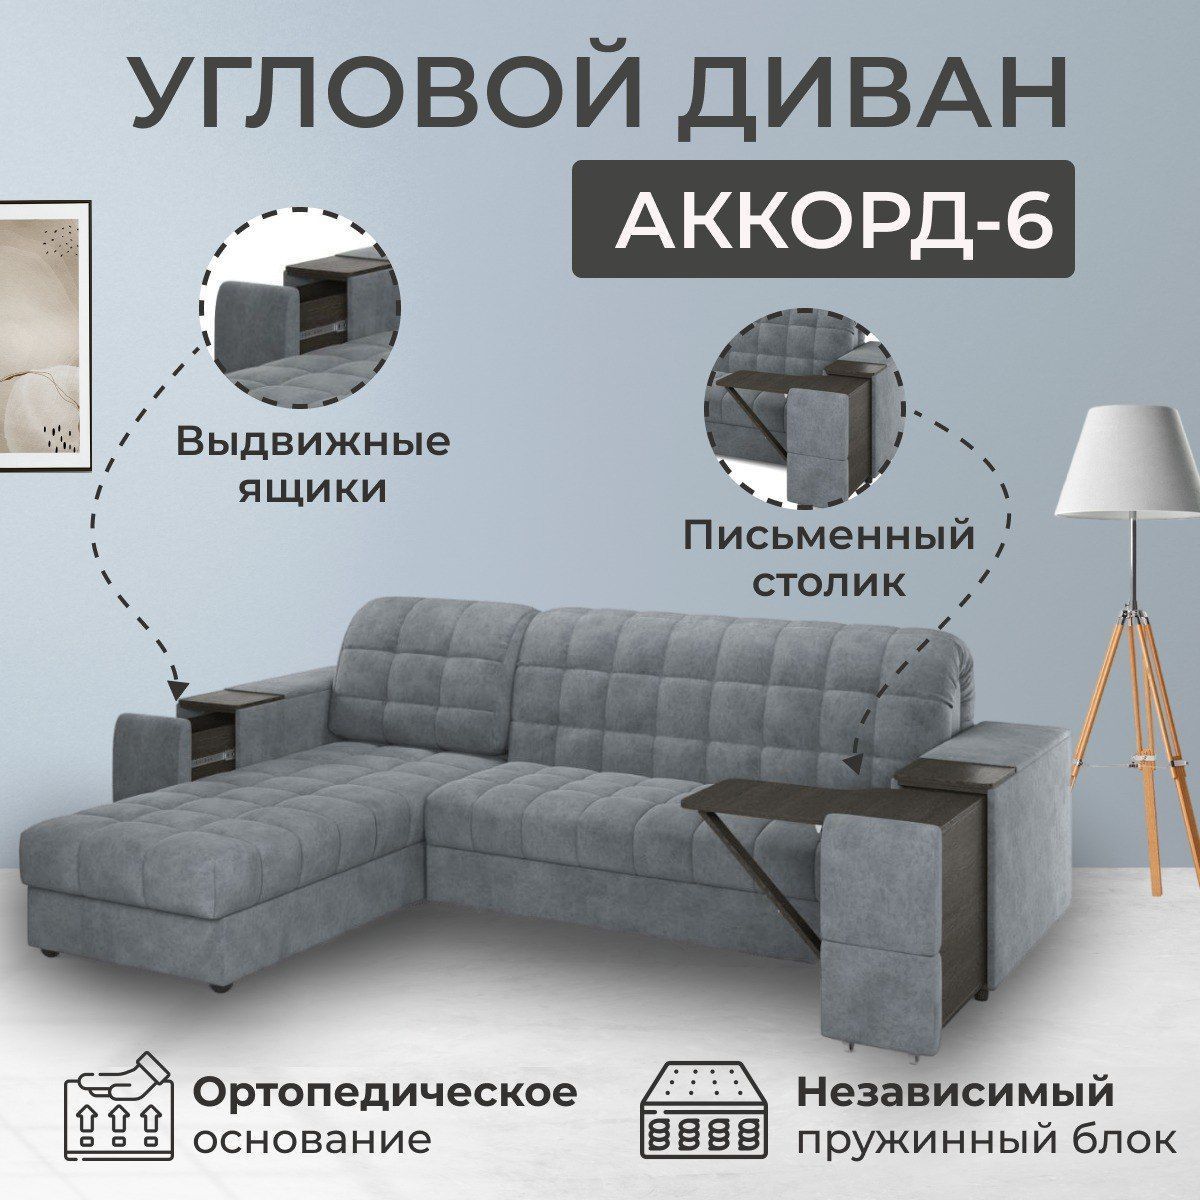 Угловой диван Аккорд-6,аккордеон на независимом пружинном блоке,210*200 см- купить с доставкой по выгодным ценам в интернет-магазине OZON (834799987)